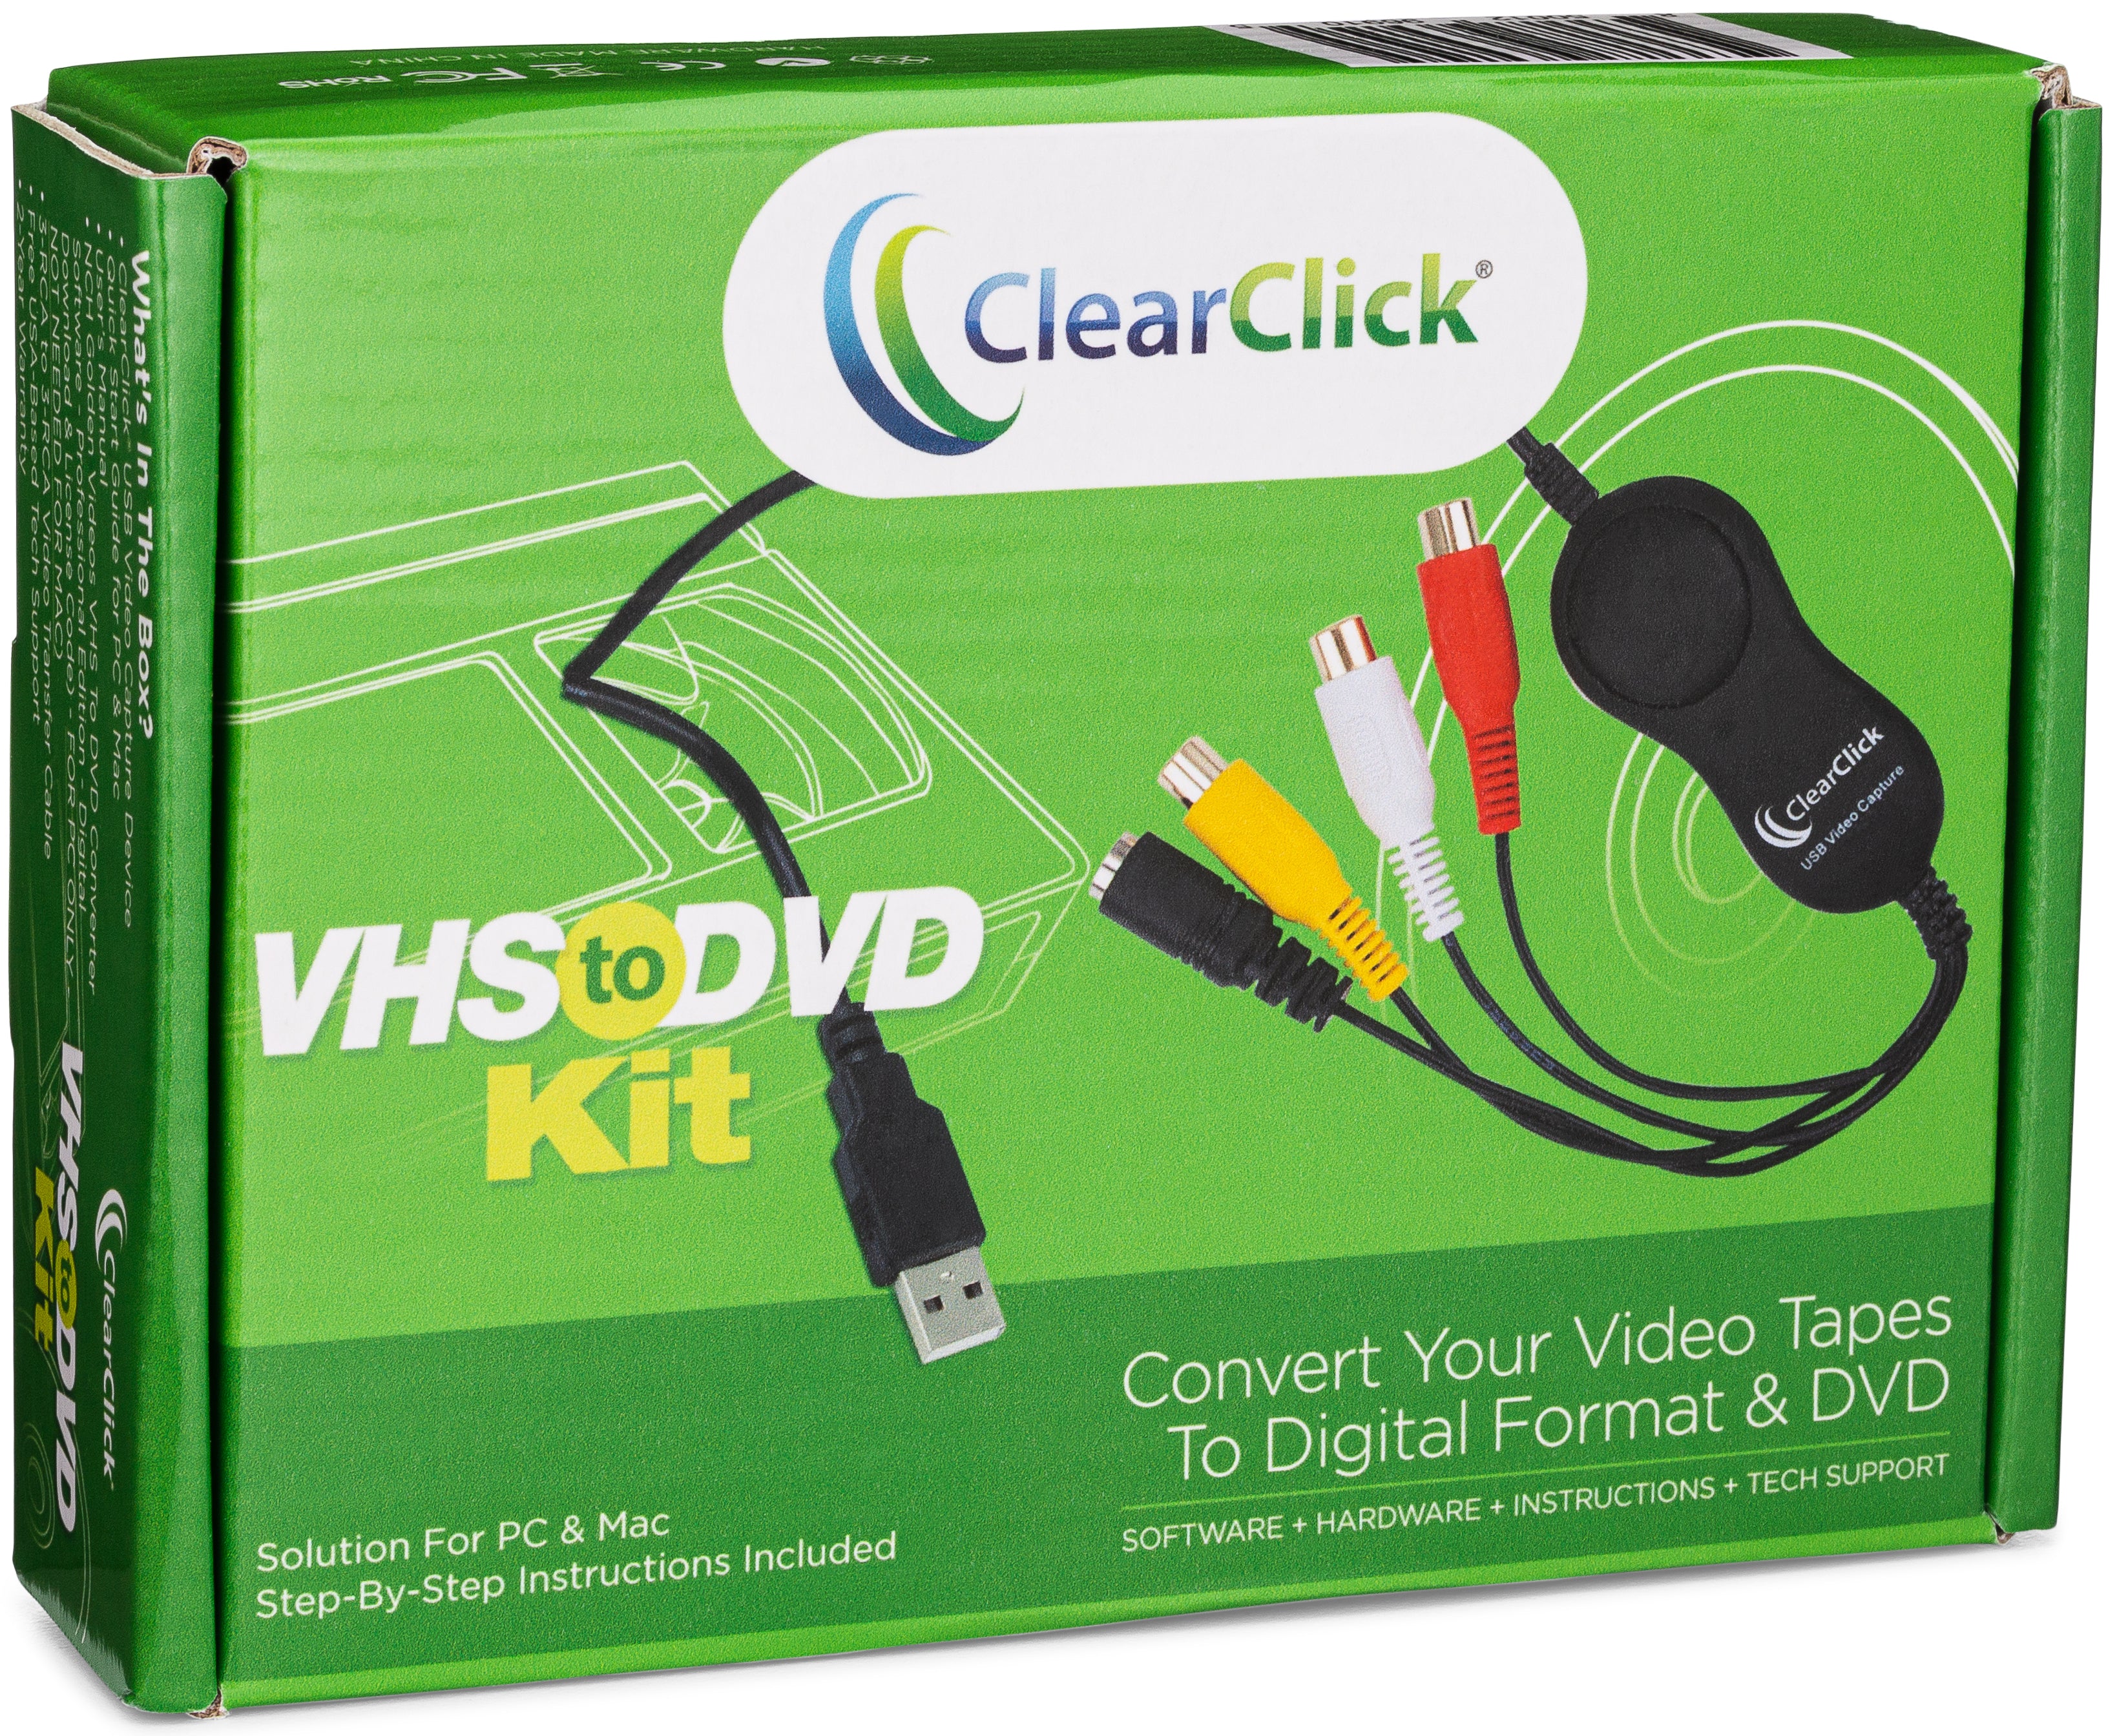 Cassette to Digital Converter Kit